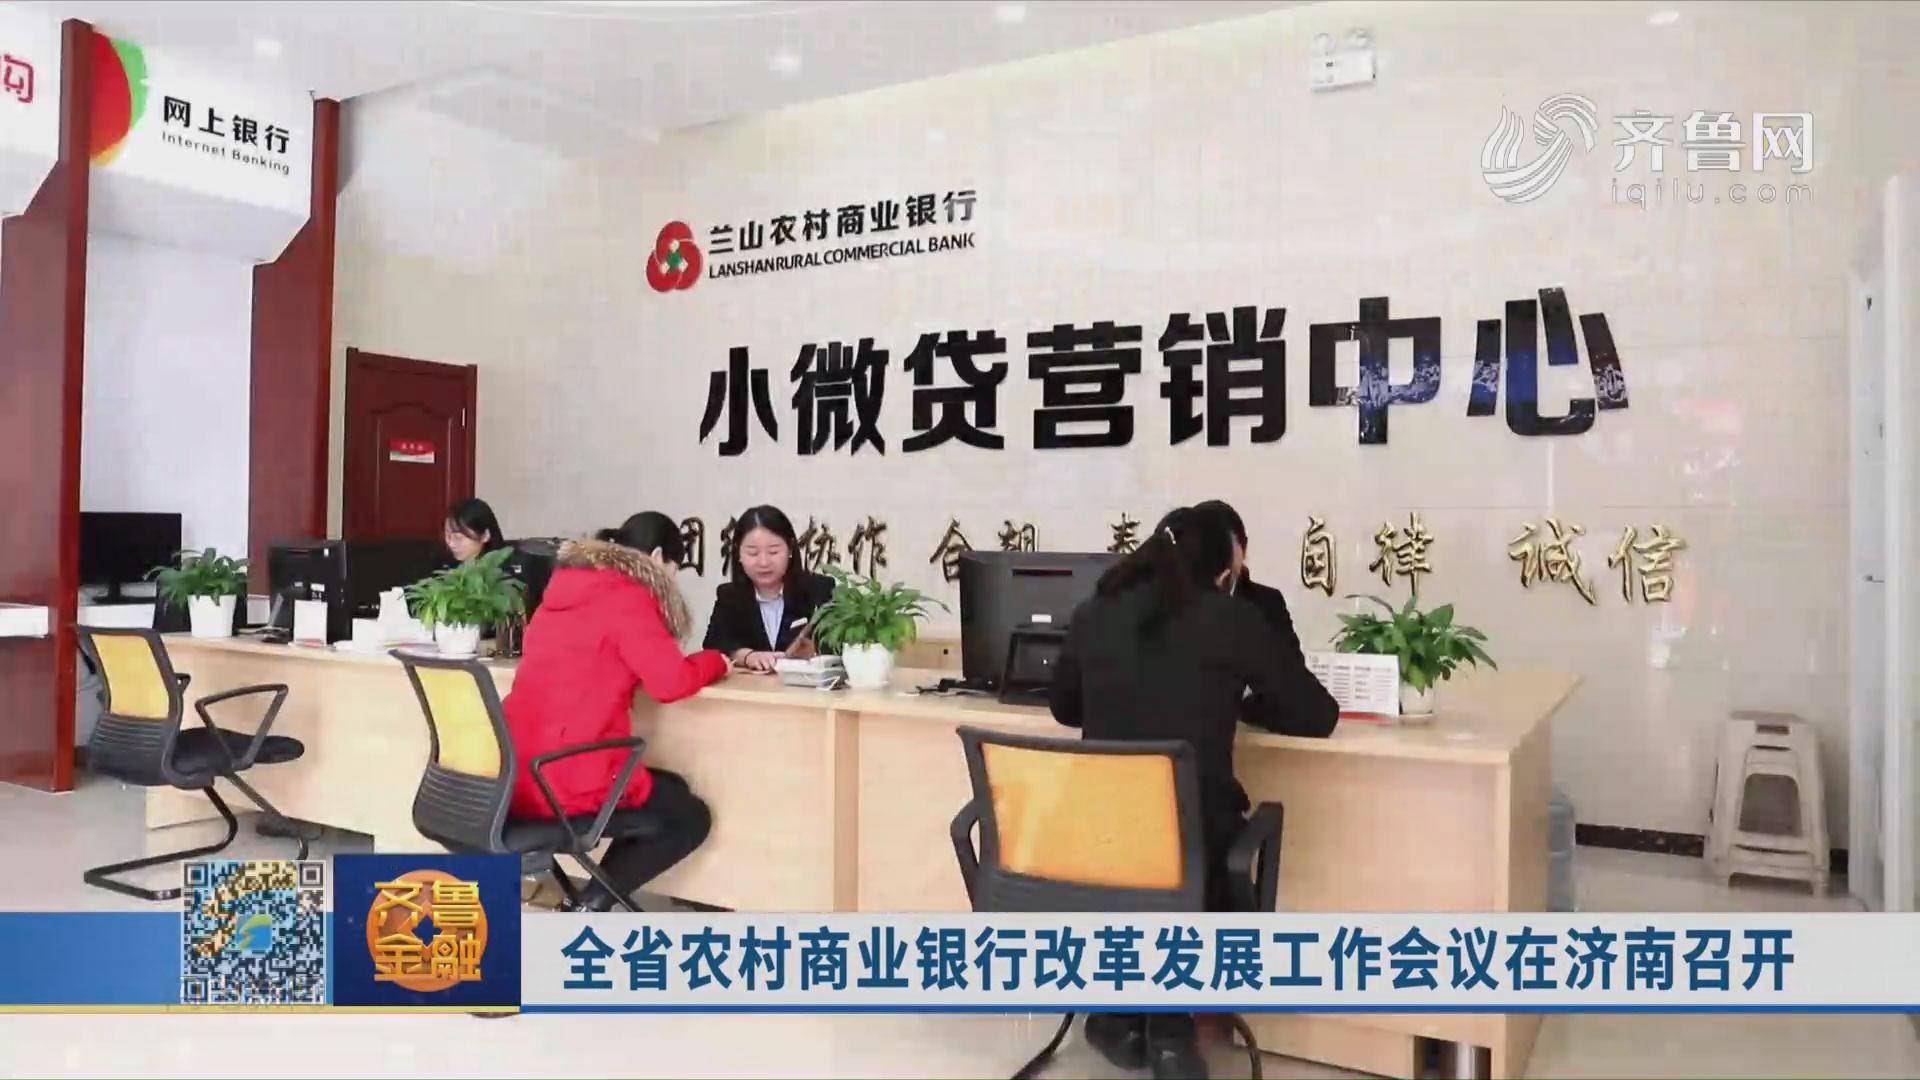 全省农村商业银行改革发展工作会议在济南召开《齐鲁金融》20191120播出